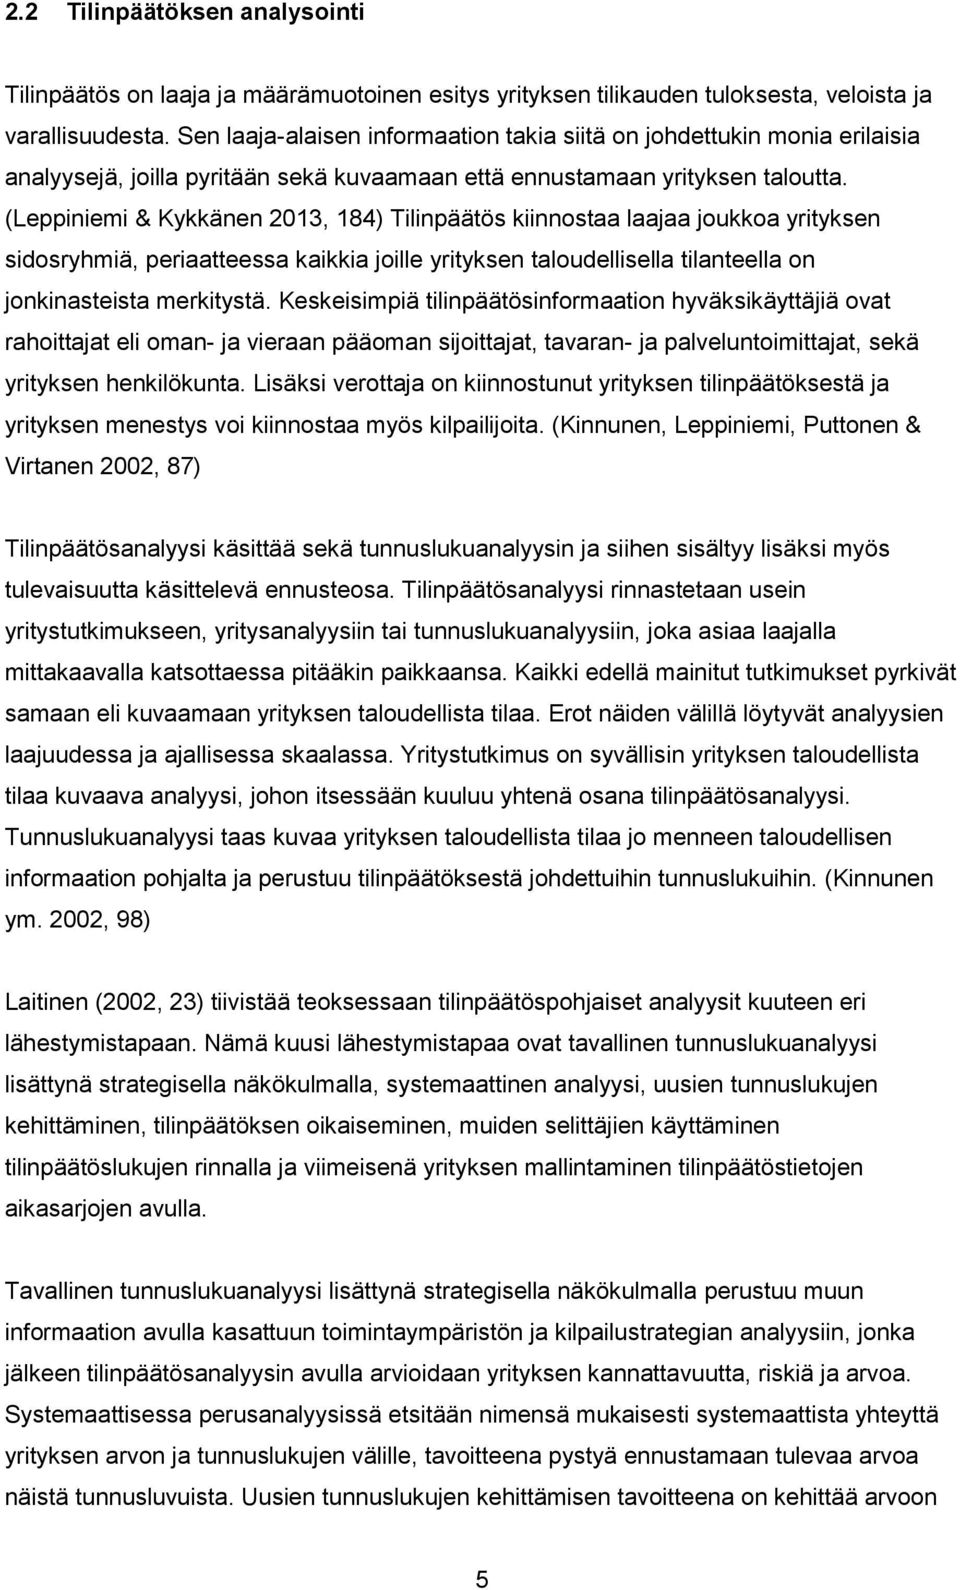 (Leppiniemi & Kykkänen 2013, 184) Tilinpäätös kiinnostaa laajaa joukkoa yrityksen sidosryhmiä, periaatteessa kaikkia joille yrityksen taloudellisella tilanteella on jonkinasteista merkitystä.